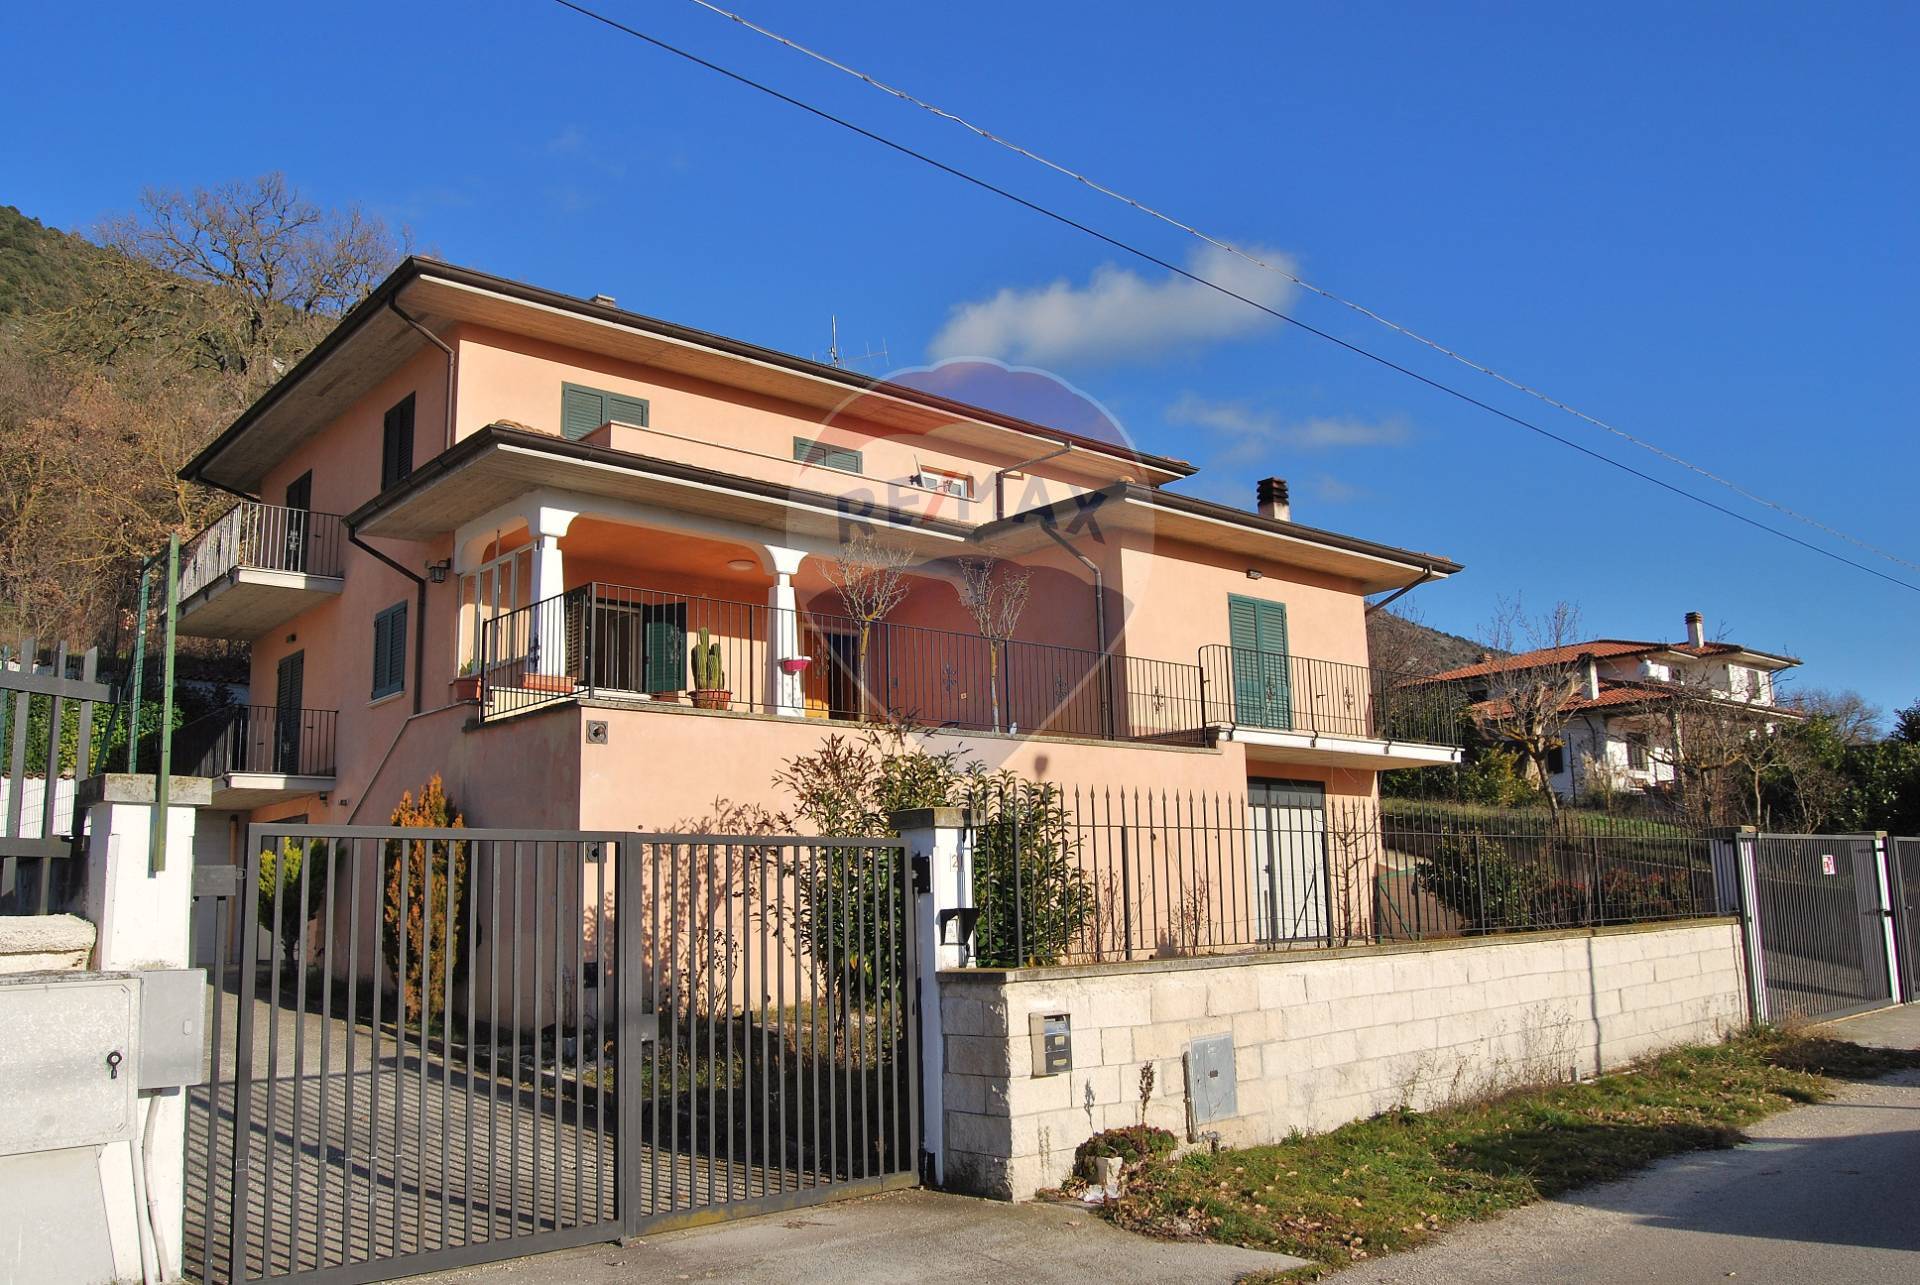 Villa in vendita a San Pio delle Camere, 6 locali, prezzo € 165.000 | CambioCasa.it